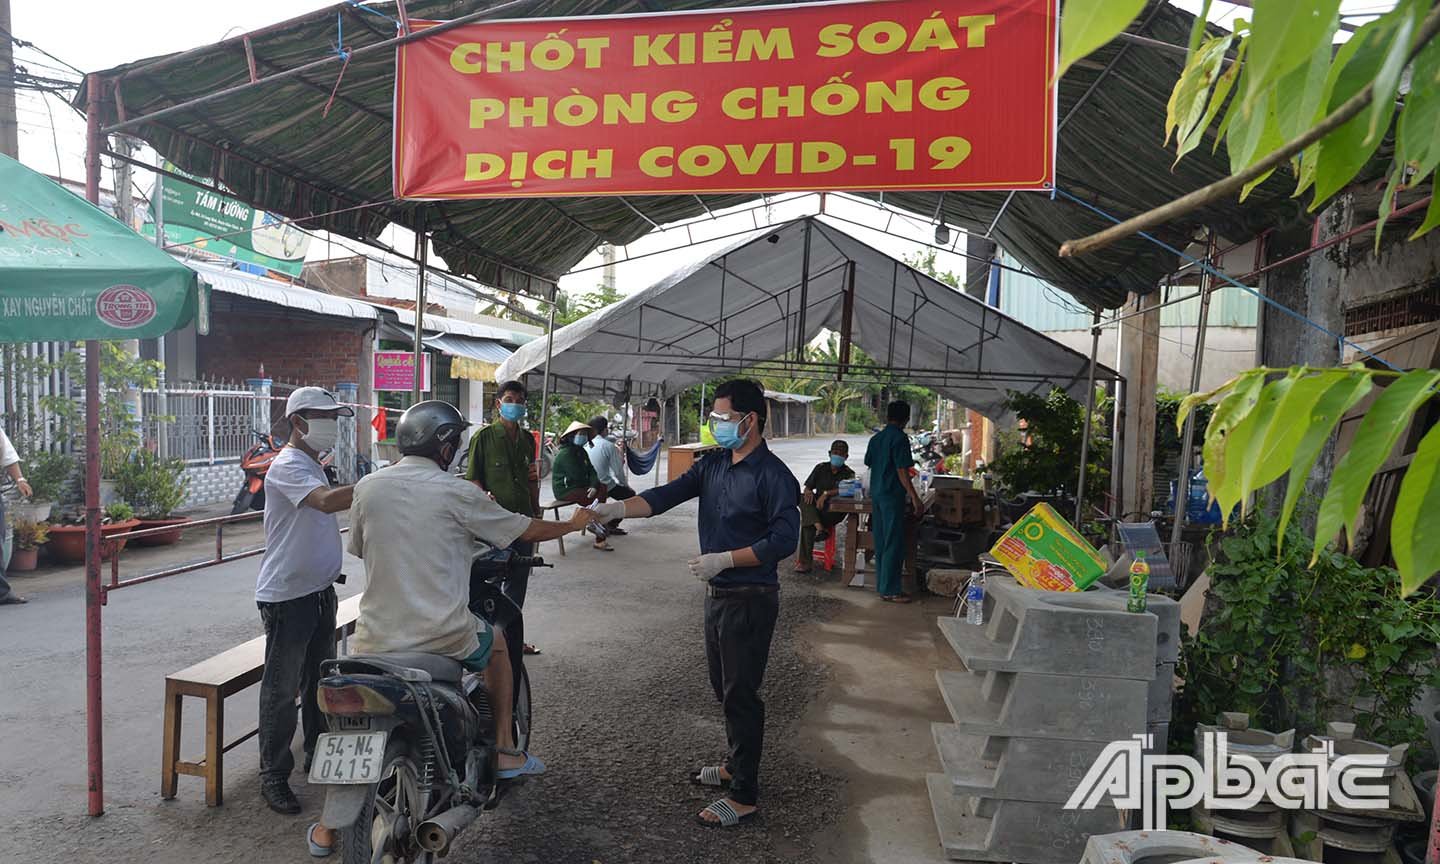 Kiểm soát y tế và kiểm tra phiếu đi chợ của người dân tại chợ Long Định.